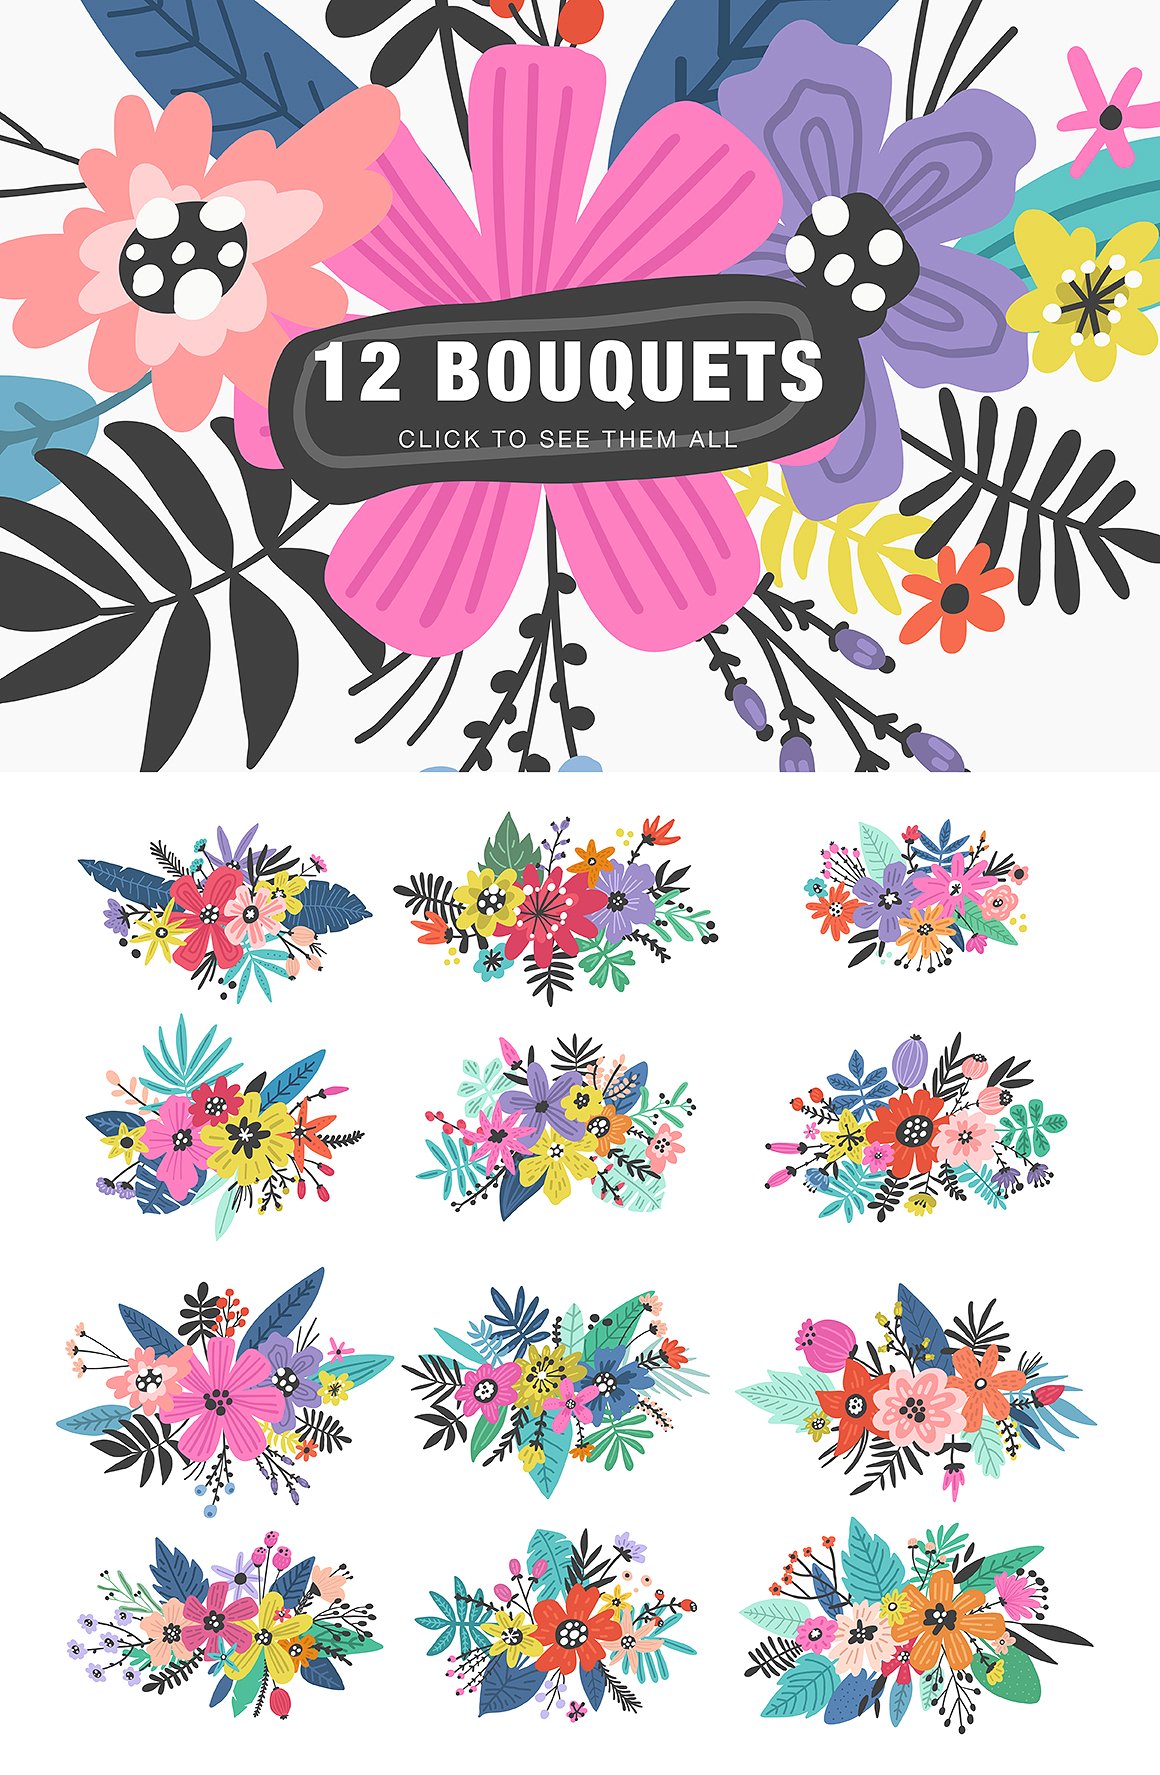 400个丰富的花卉图形元素 Floral-Blast-400